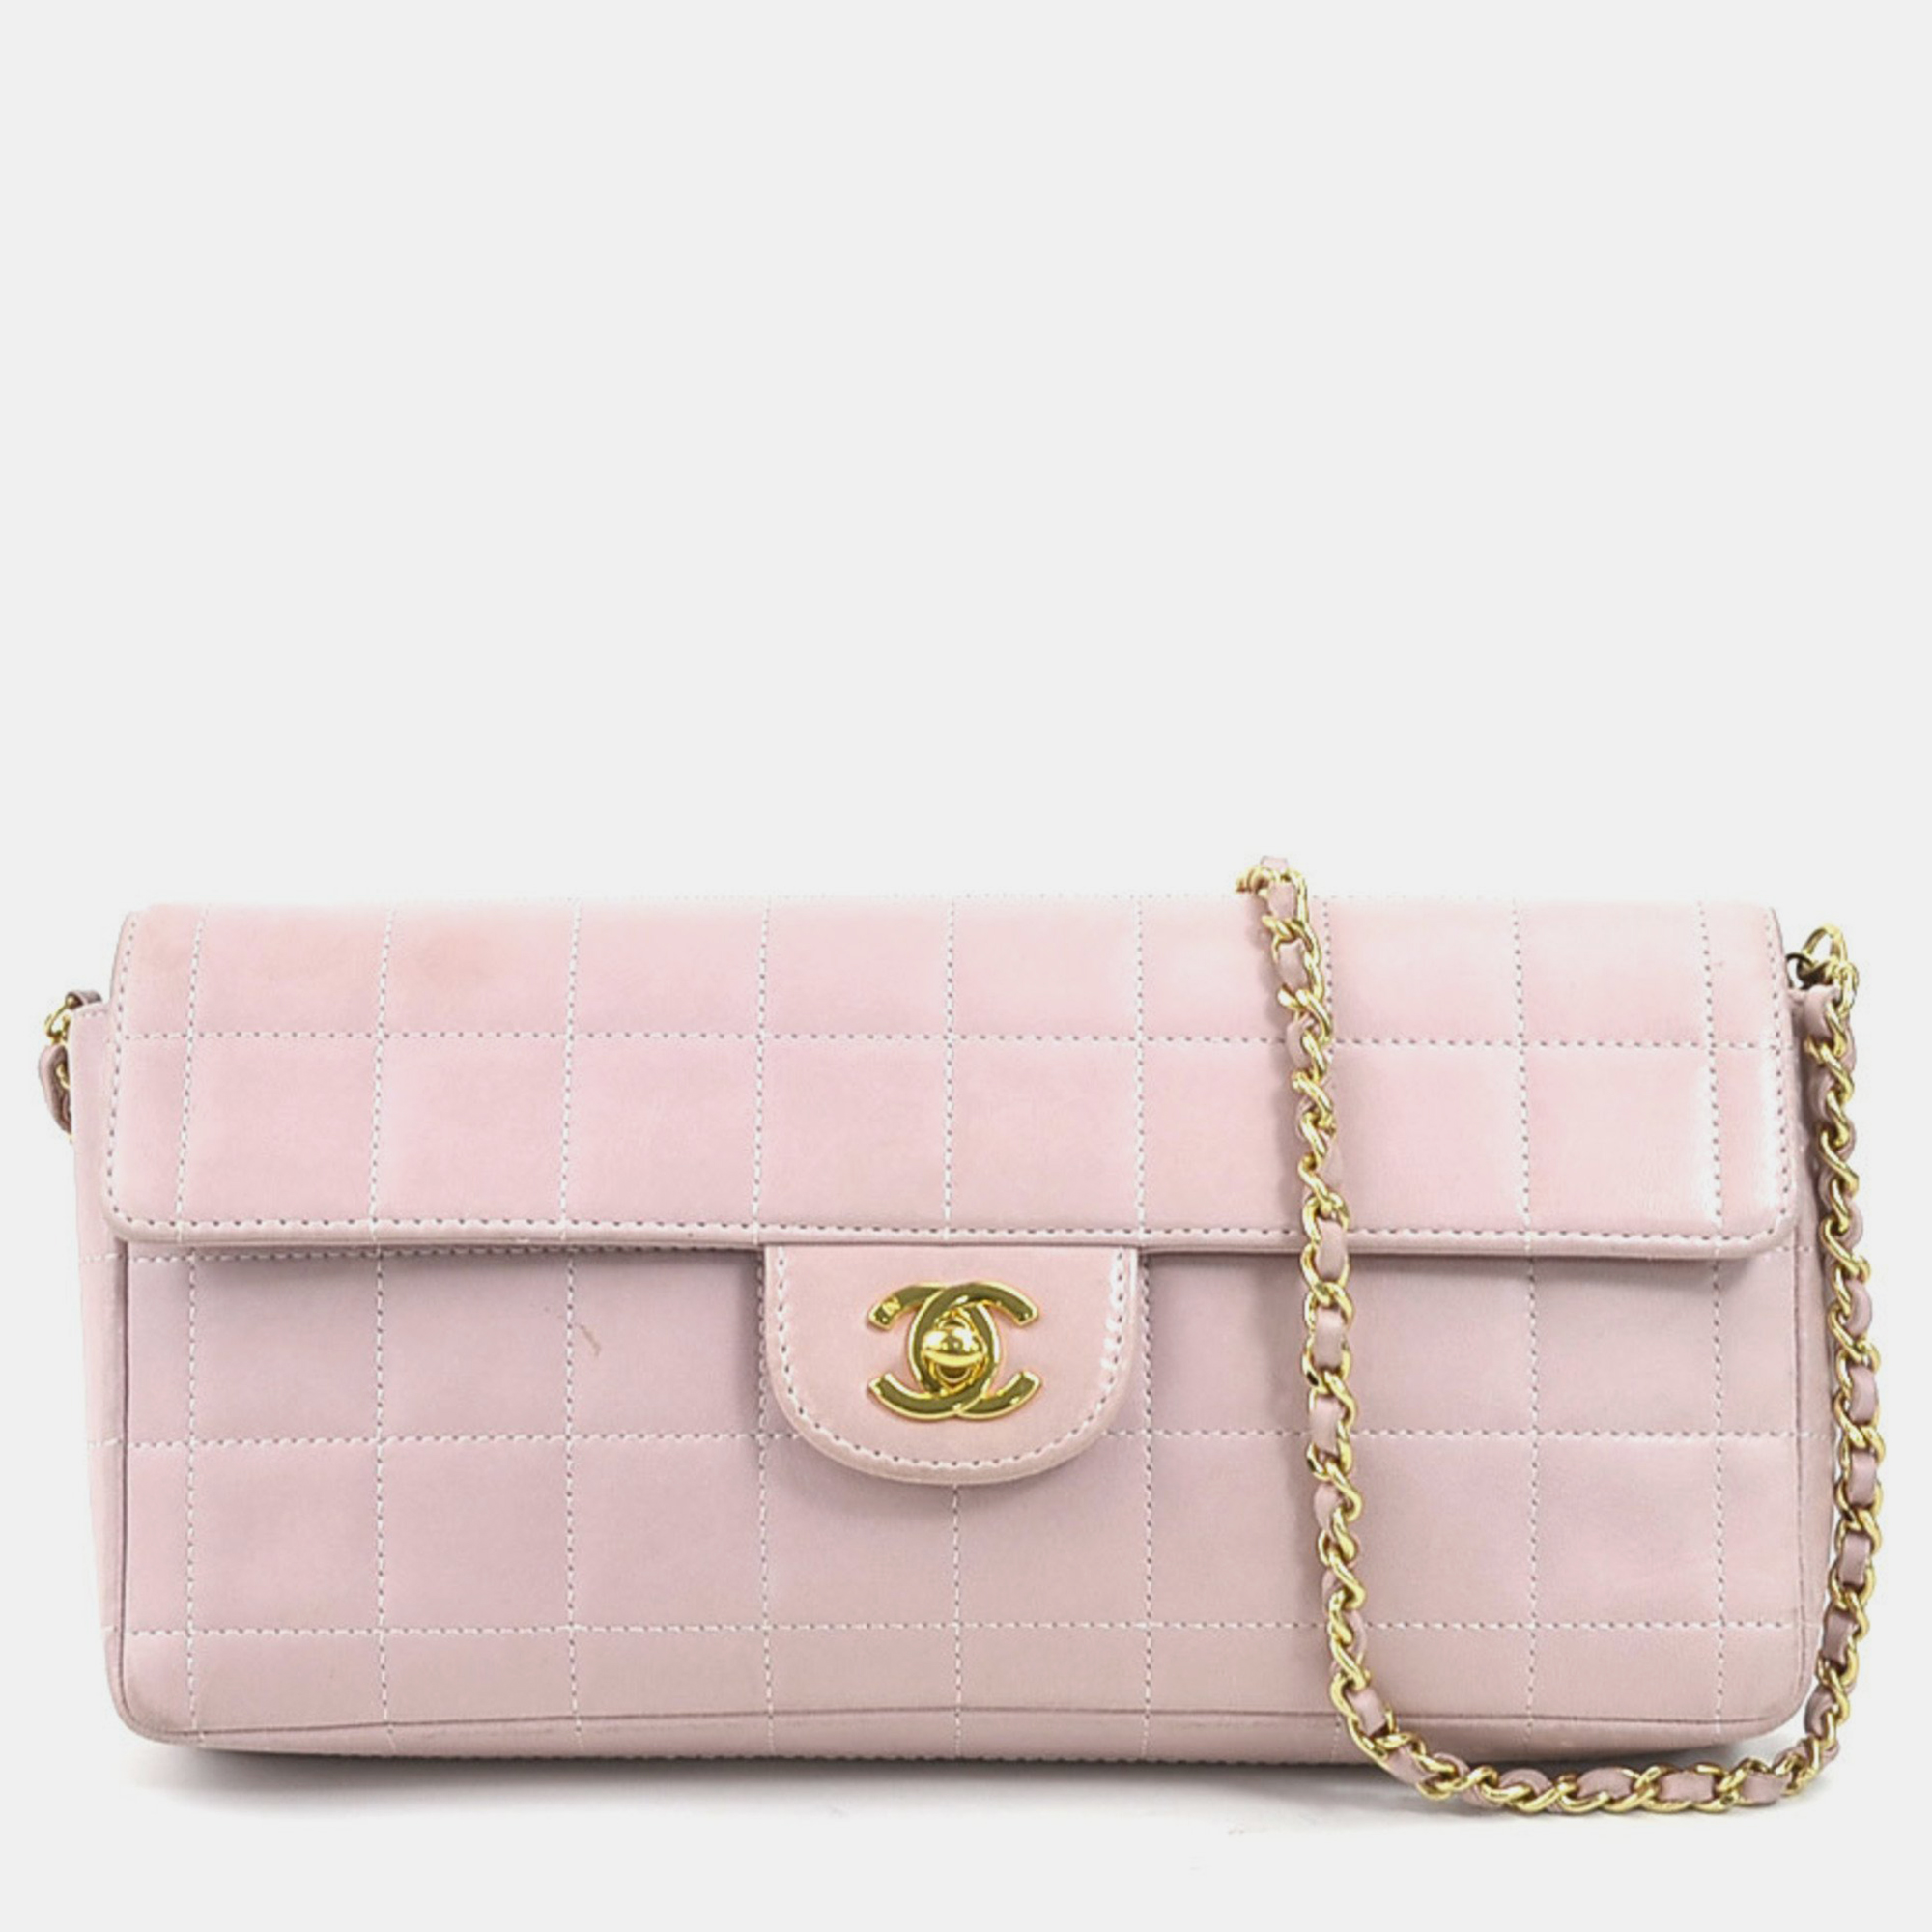 Chanel light pink leather chocolate bar shoulder bag